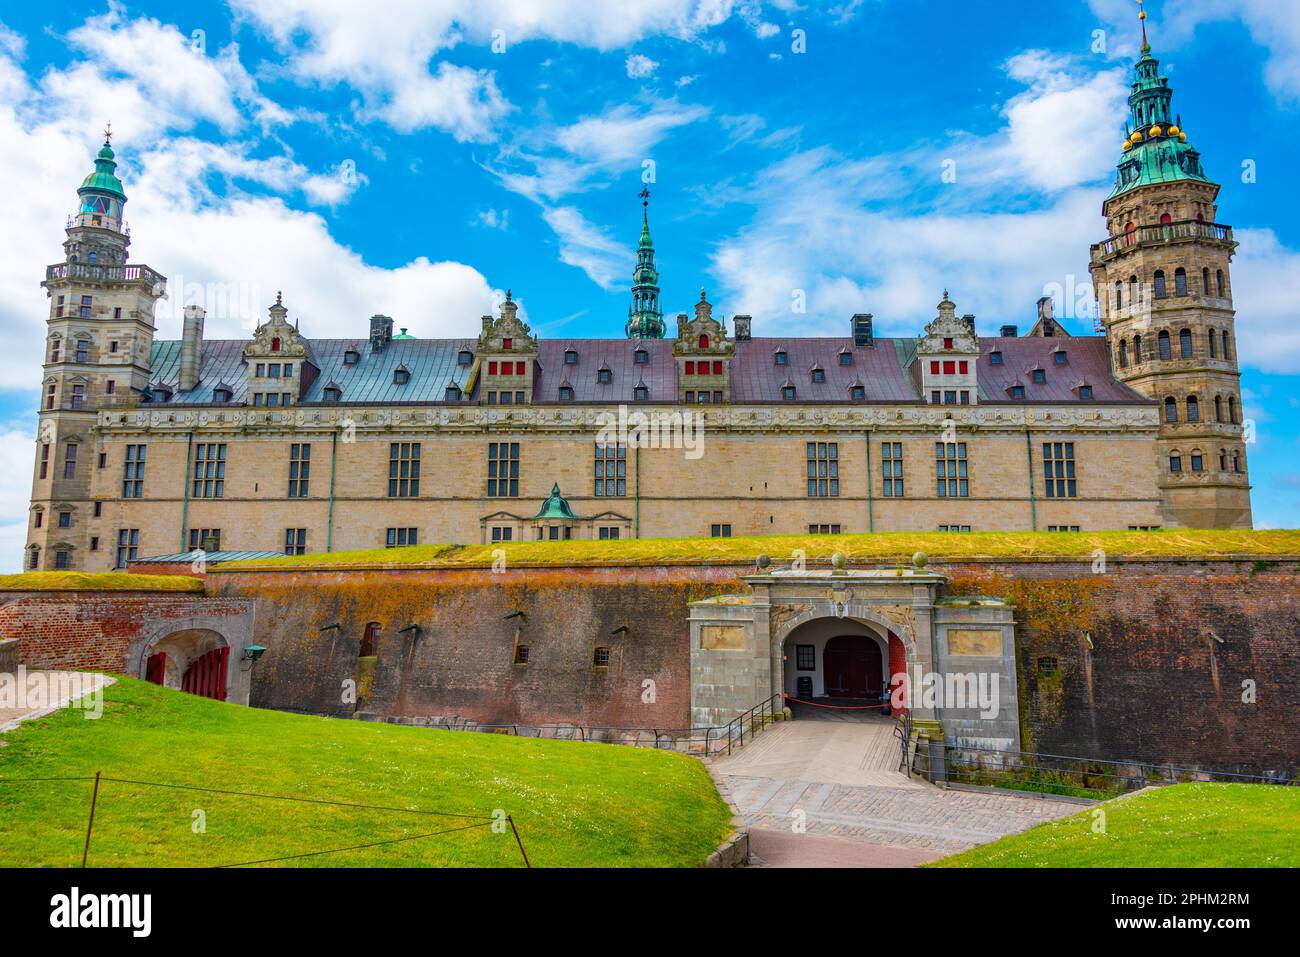 View of the Kronborg castle at Helsingor, Denmark. Stock Photo